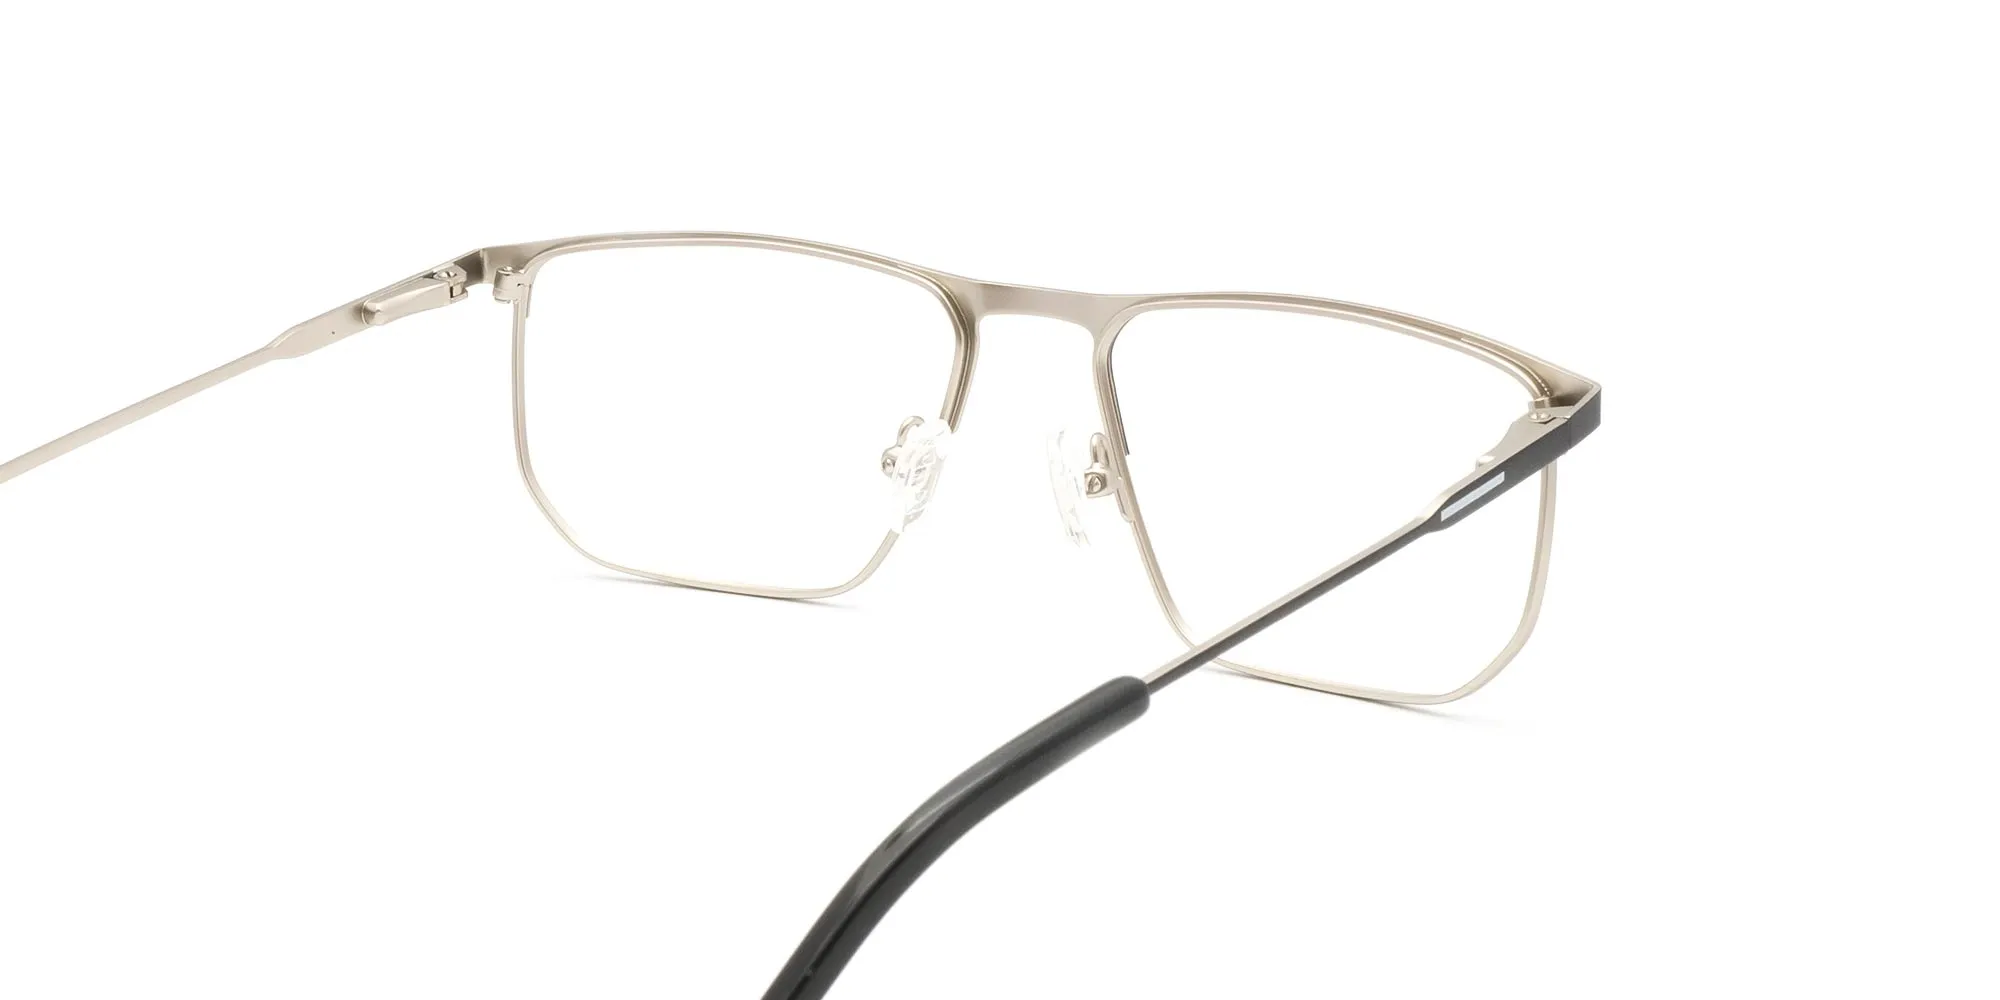 thin metal rim glasses